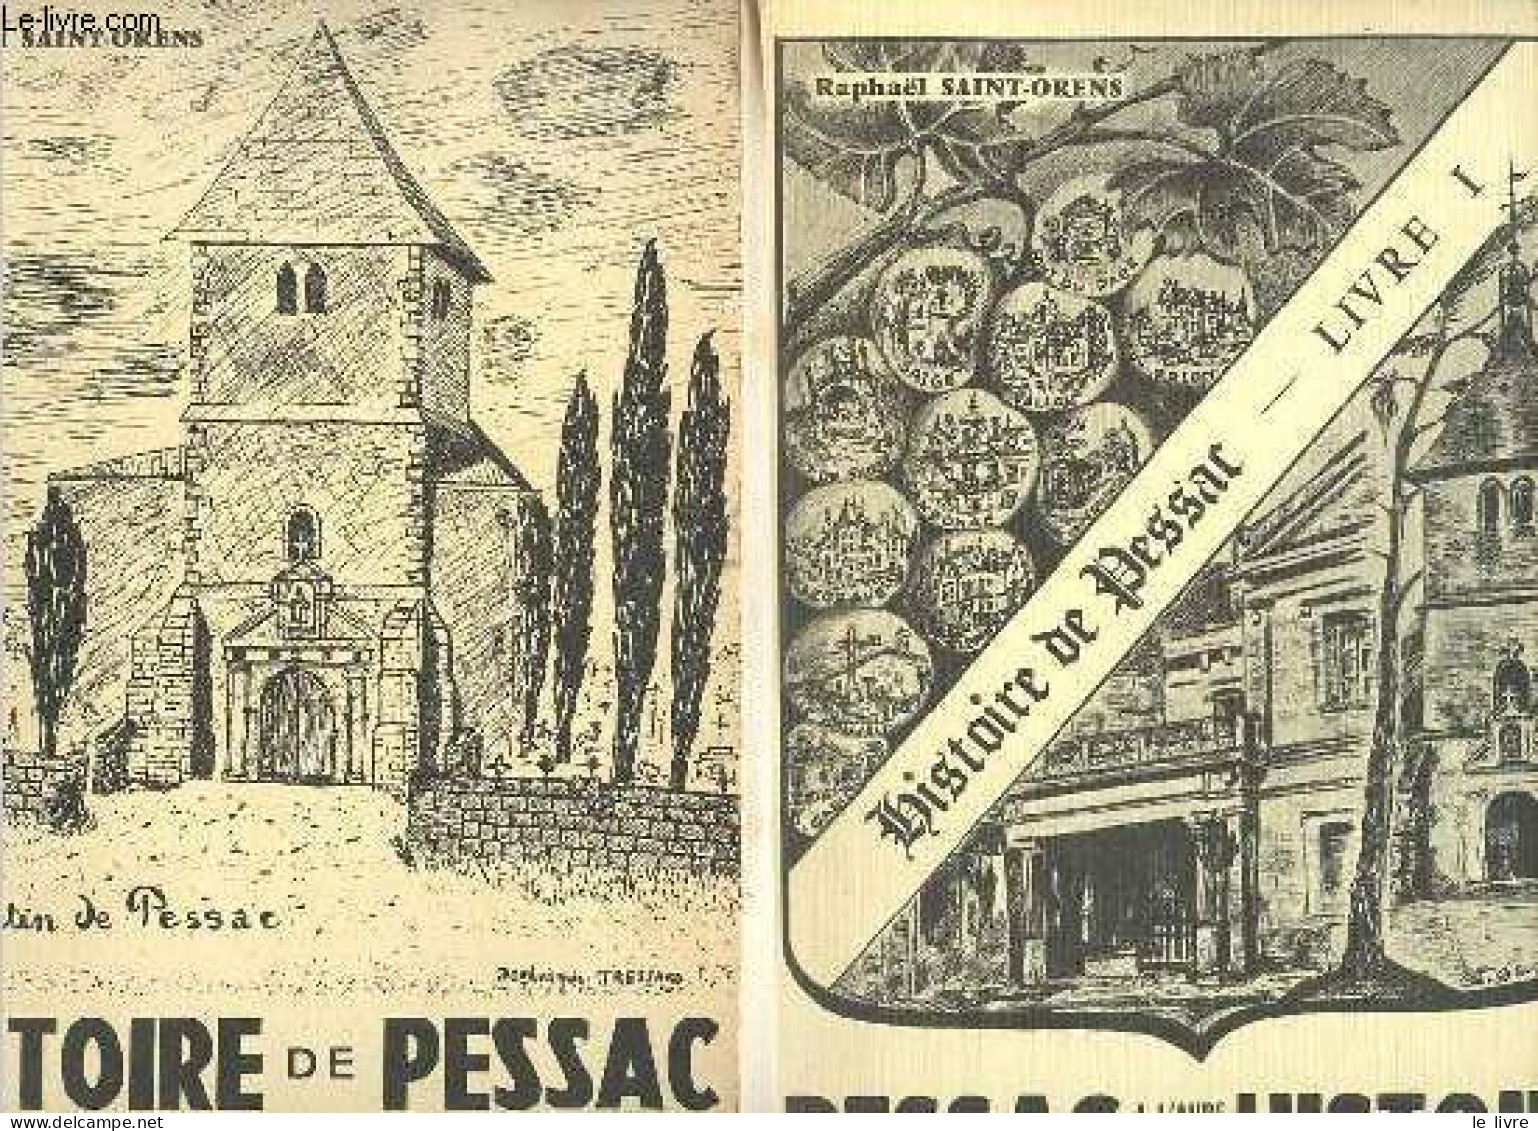 Histoire De Pessac - Tome 1 + Tome 2 (2 Volumes) - Tome 1 : Pessac A L'aube De Son Histoire - Tome 2 : Histoire Expliqué - Aquitaine